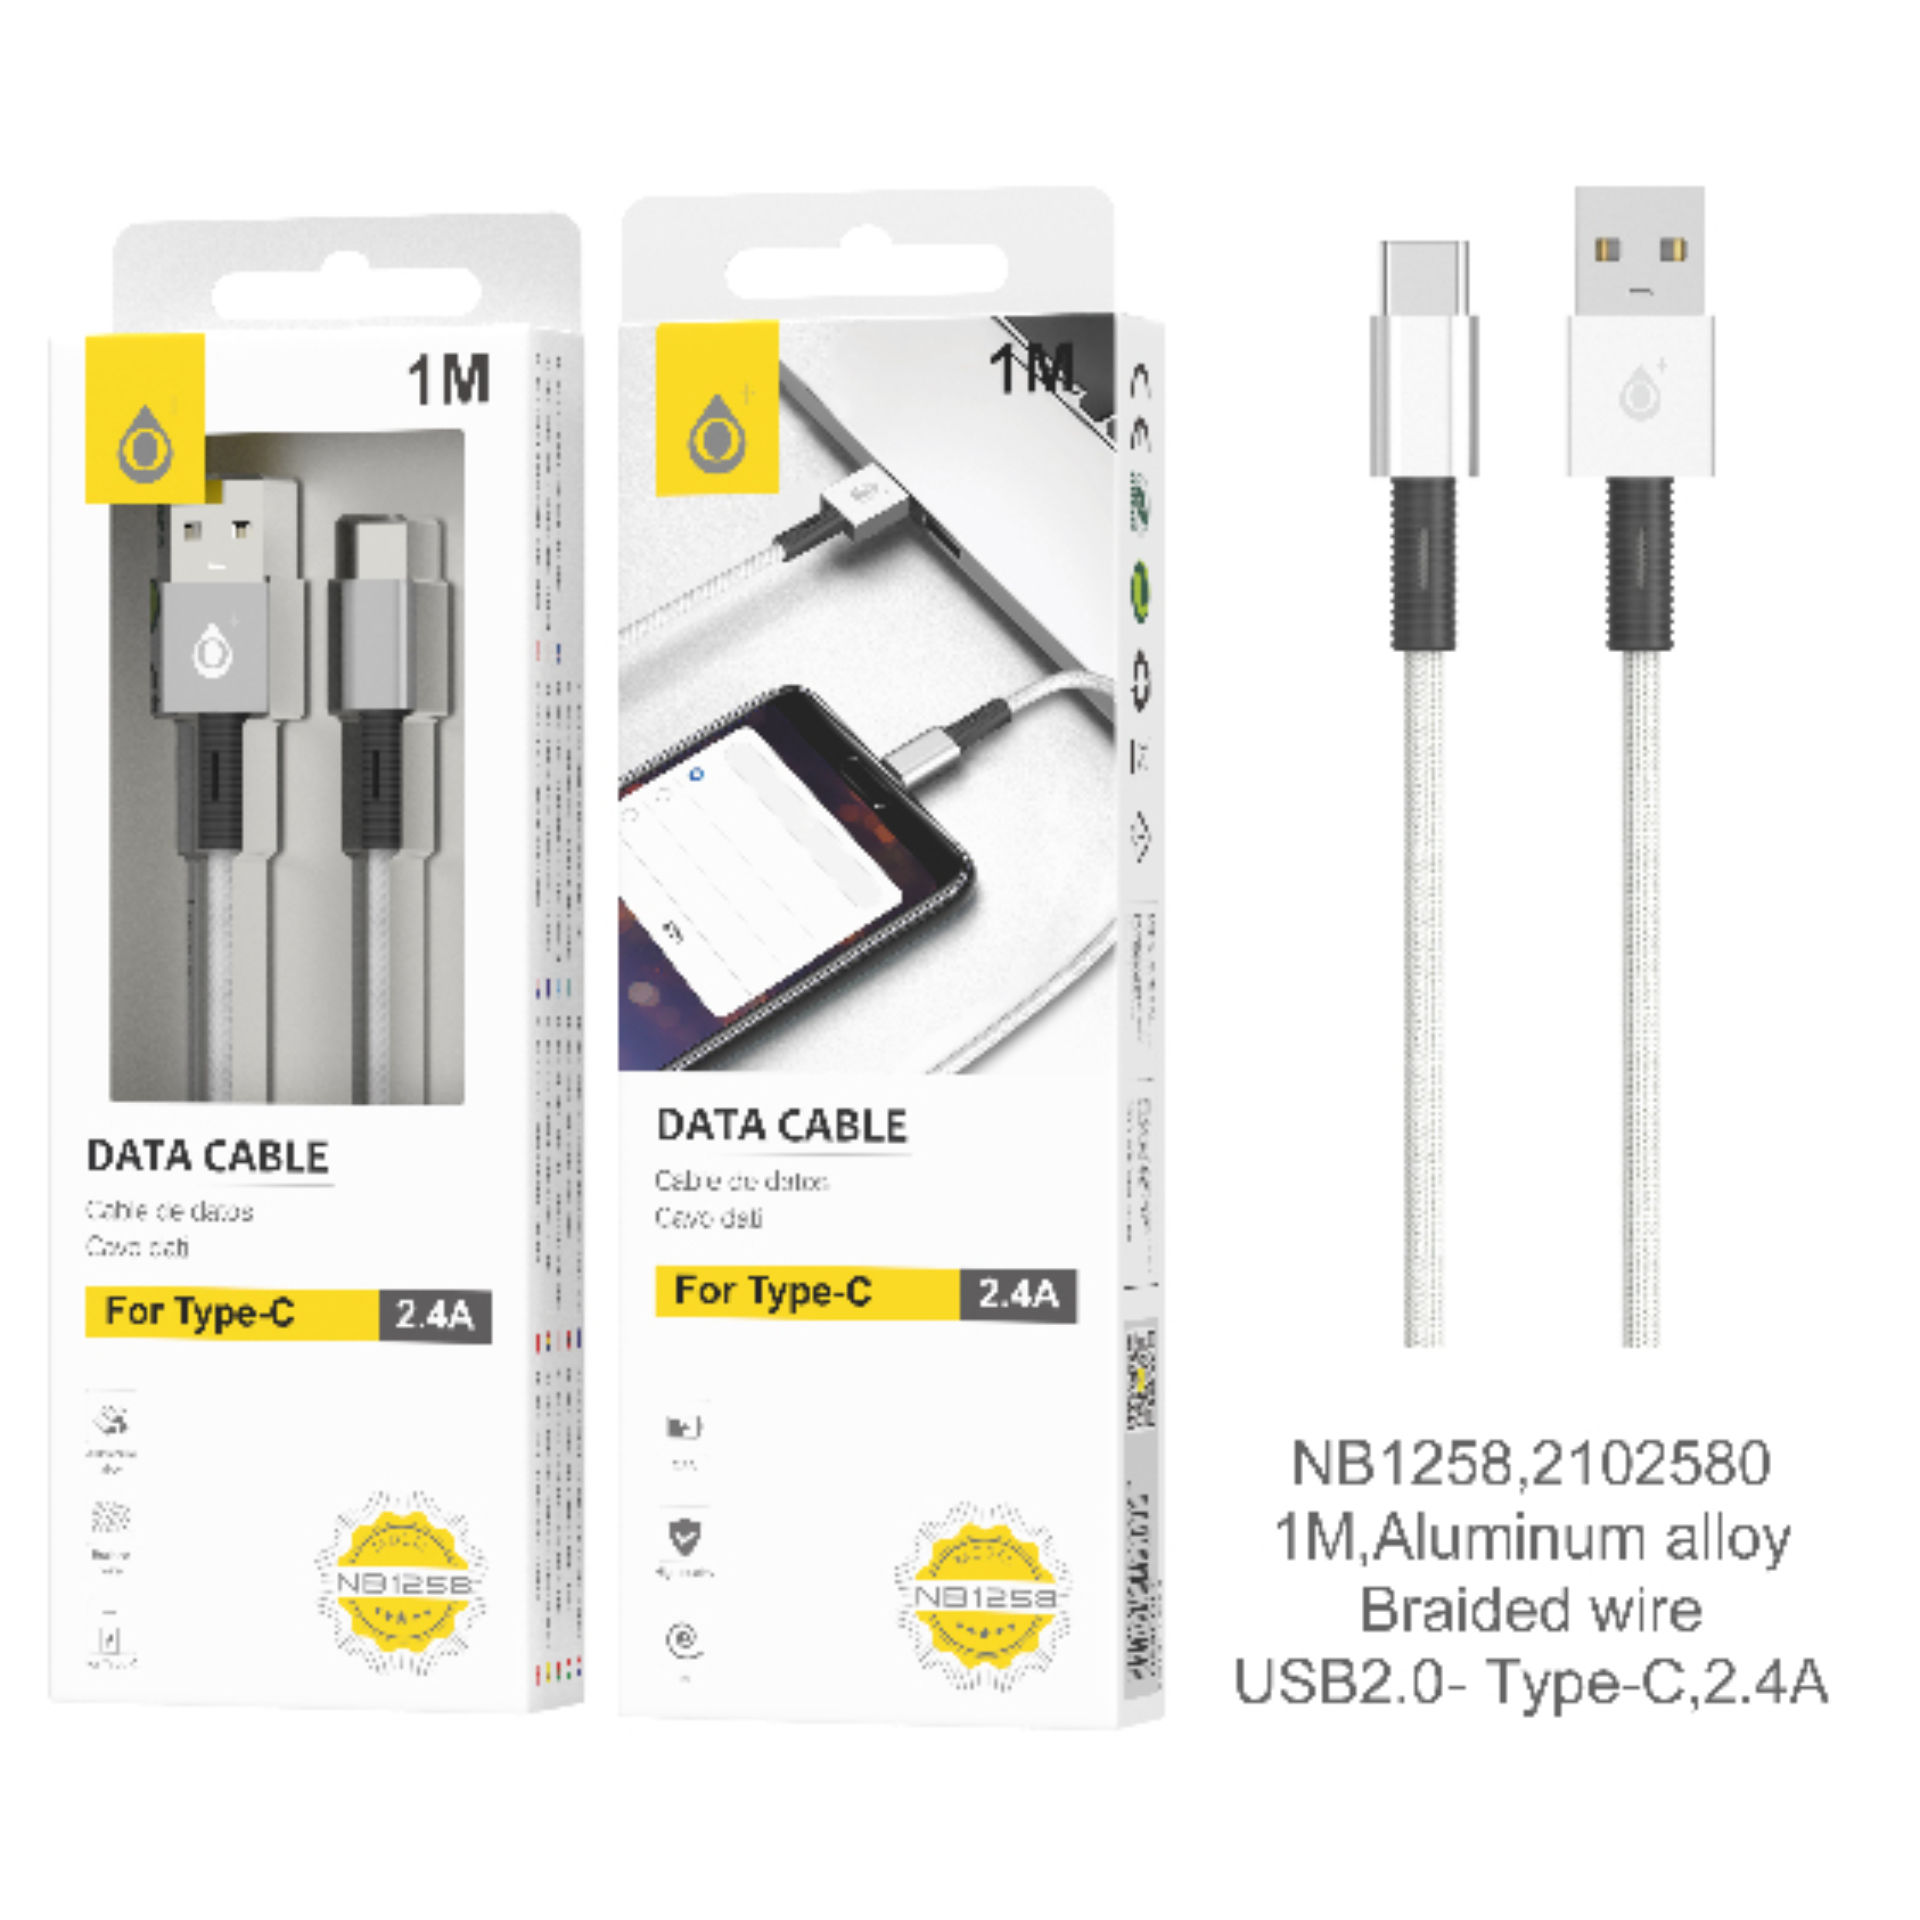 ONEPLUS NB1258 CAVO DATI USB Type-C 2.4A GRIGIOOne Plus